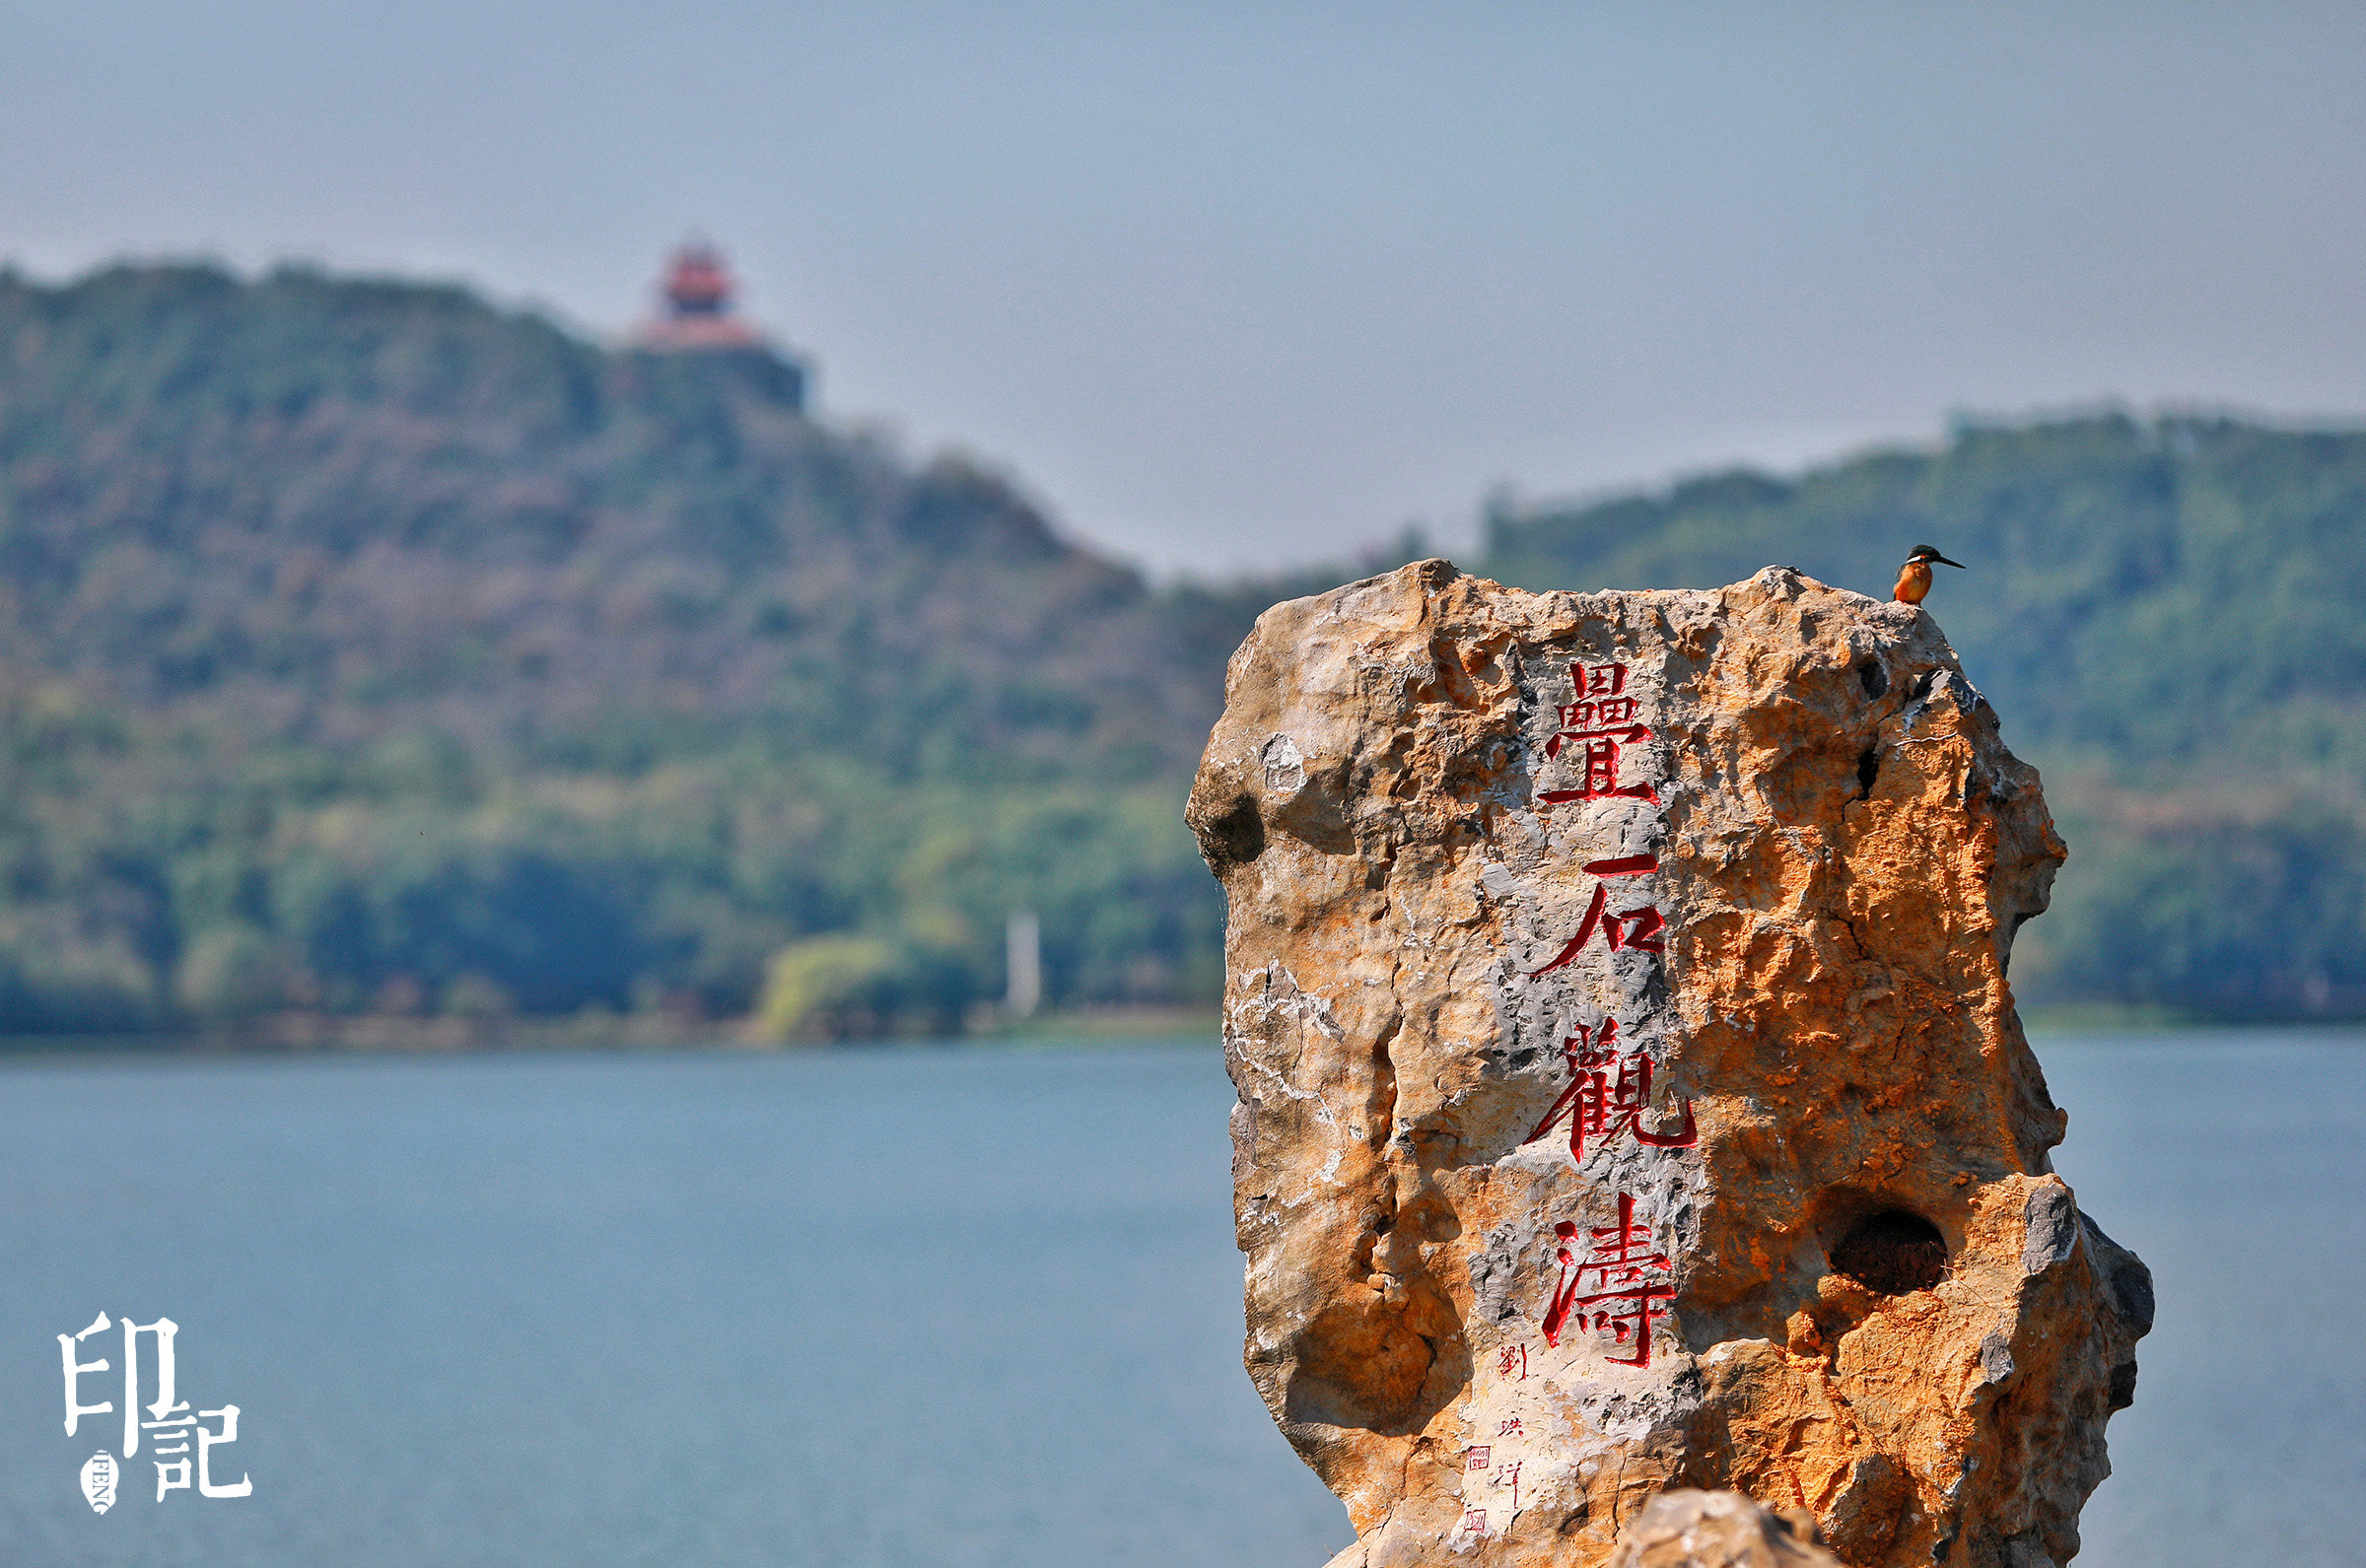 国家级湿地公园,国家生态旅游示范区,武汉市东湖生态旅游风景区坚定不